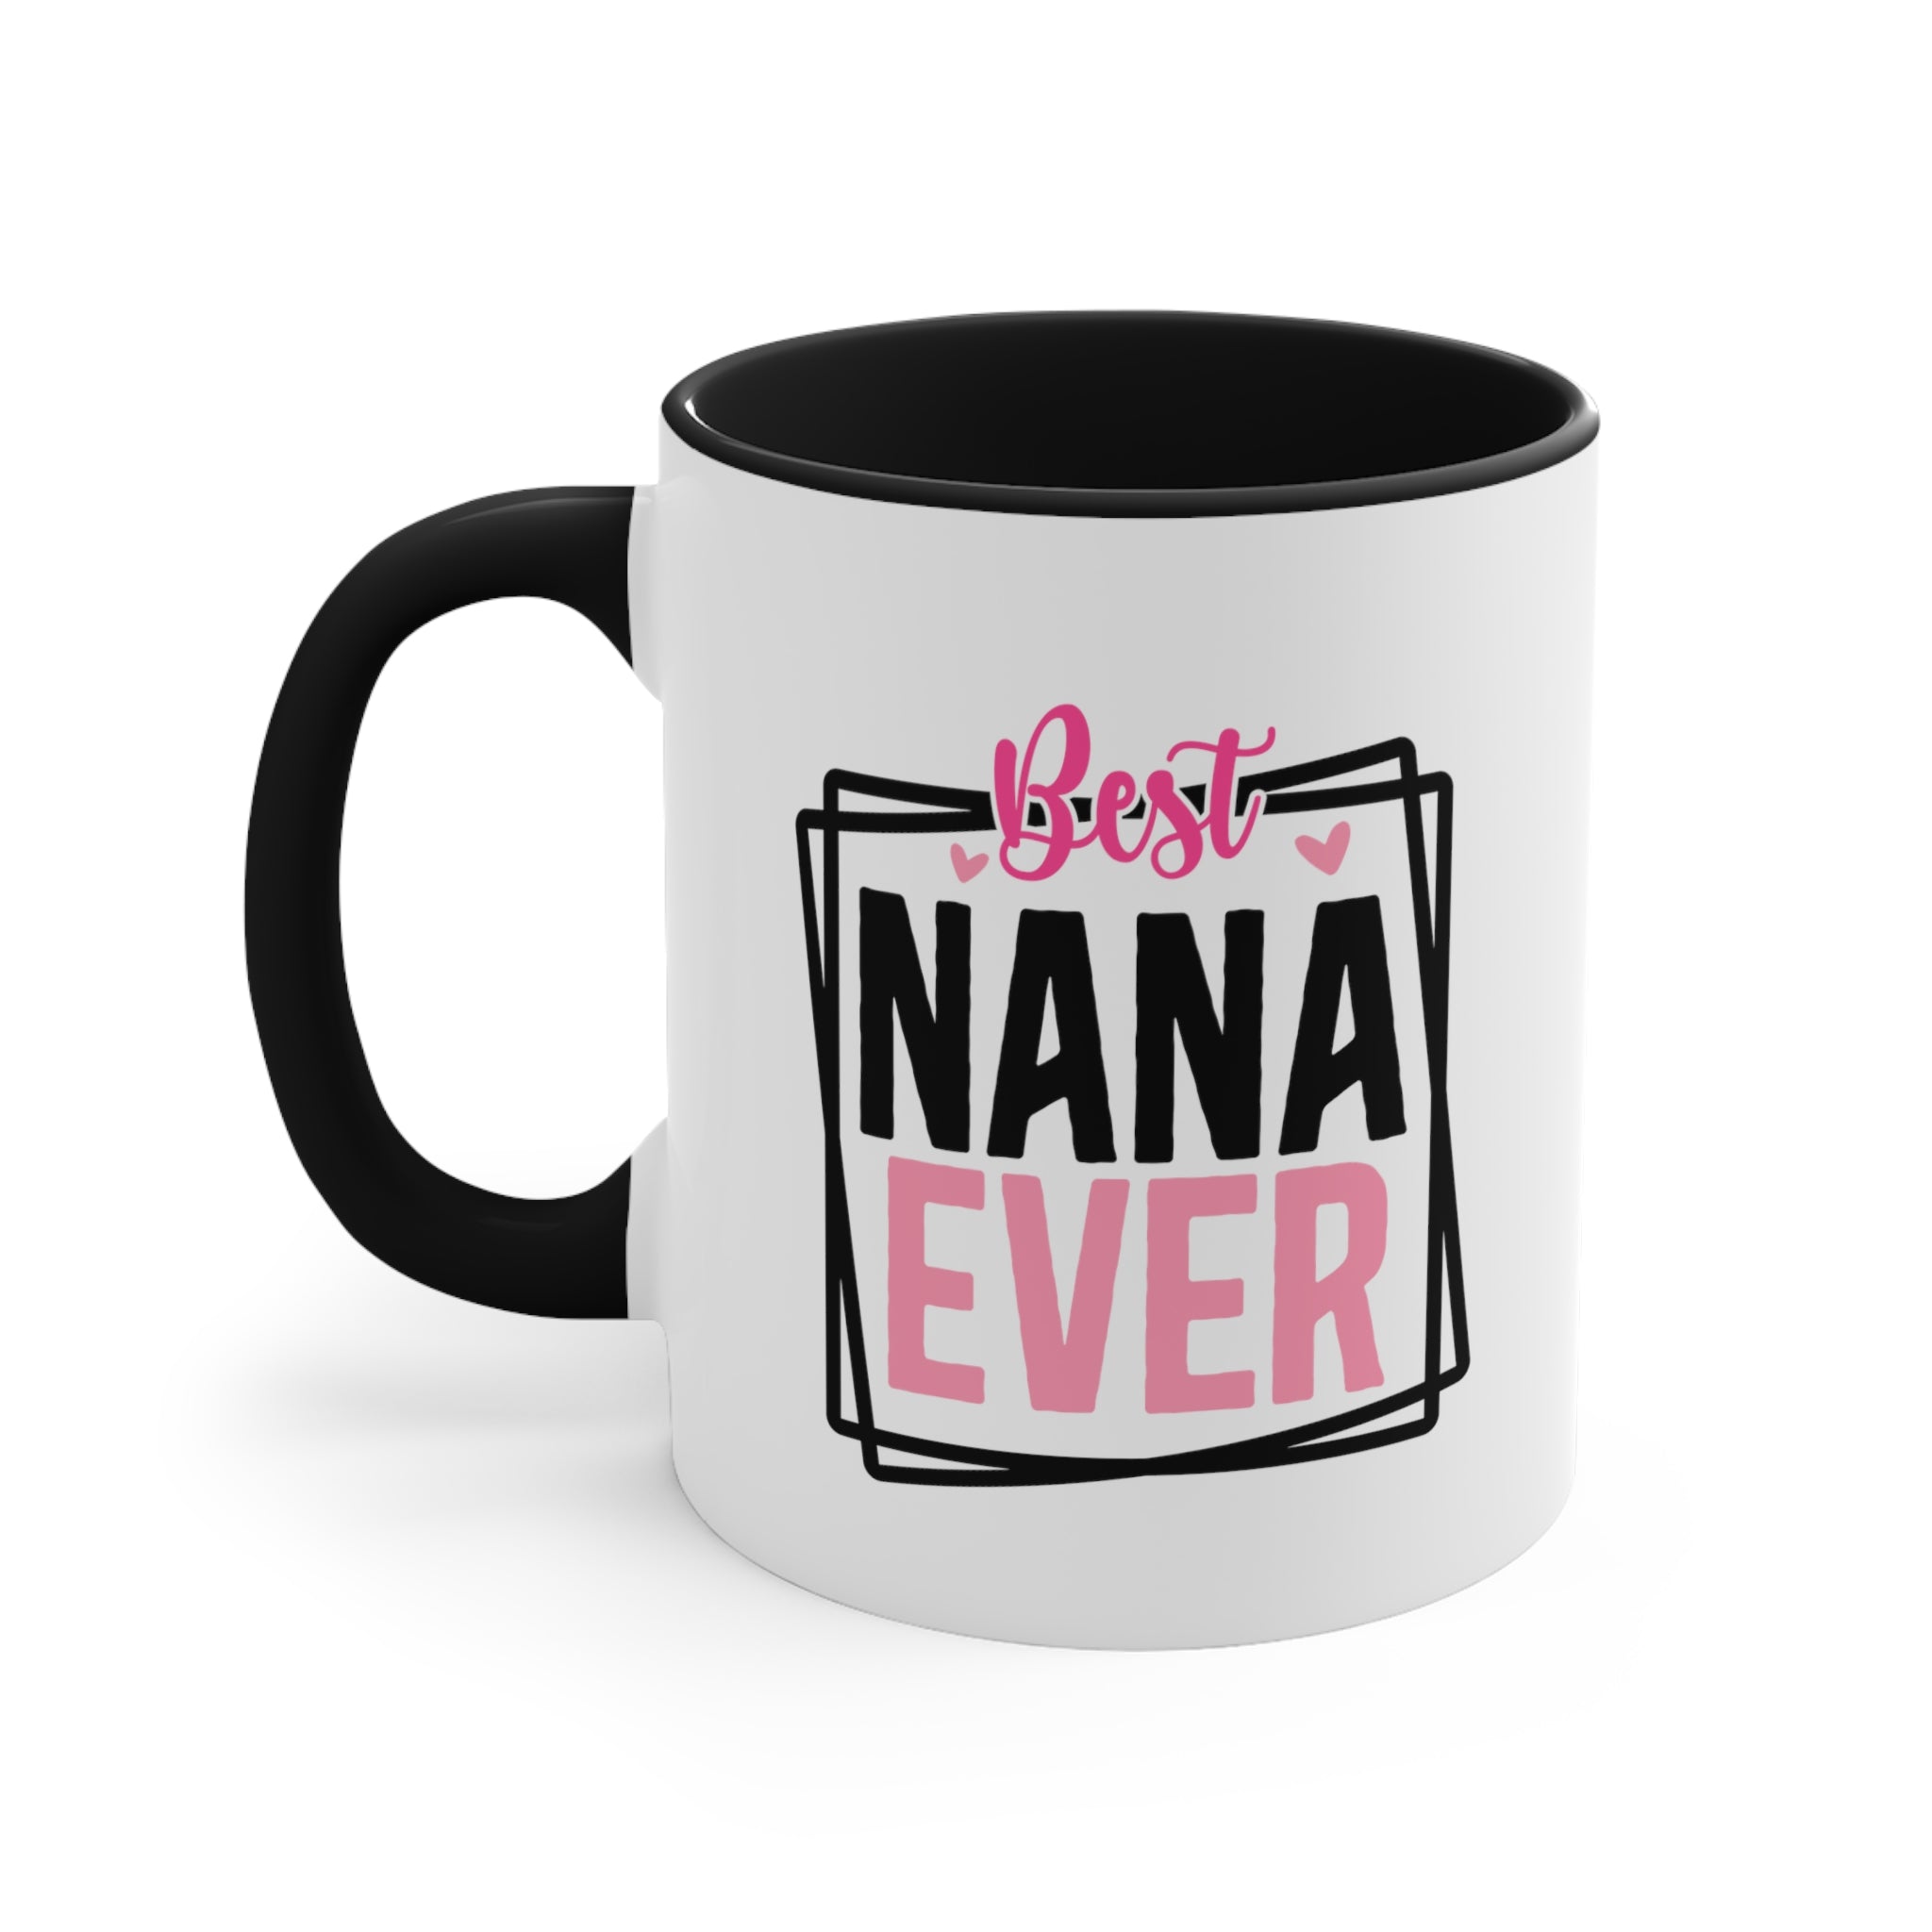 Best Nana Ever Coffee Mug, 11oz Grandma Gift Grandmother Cup Mother's Day Birthday Christmas Gift For Grandma